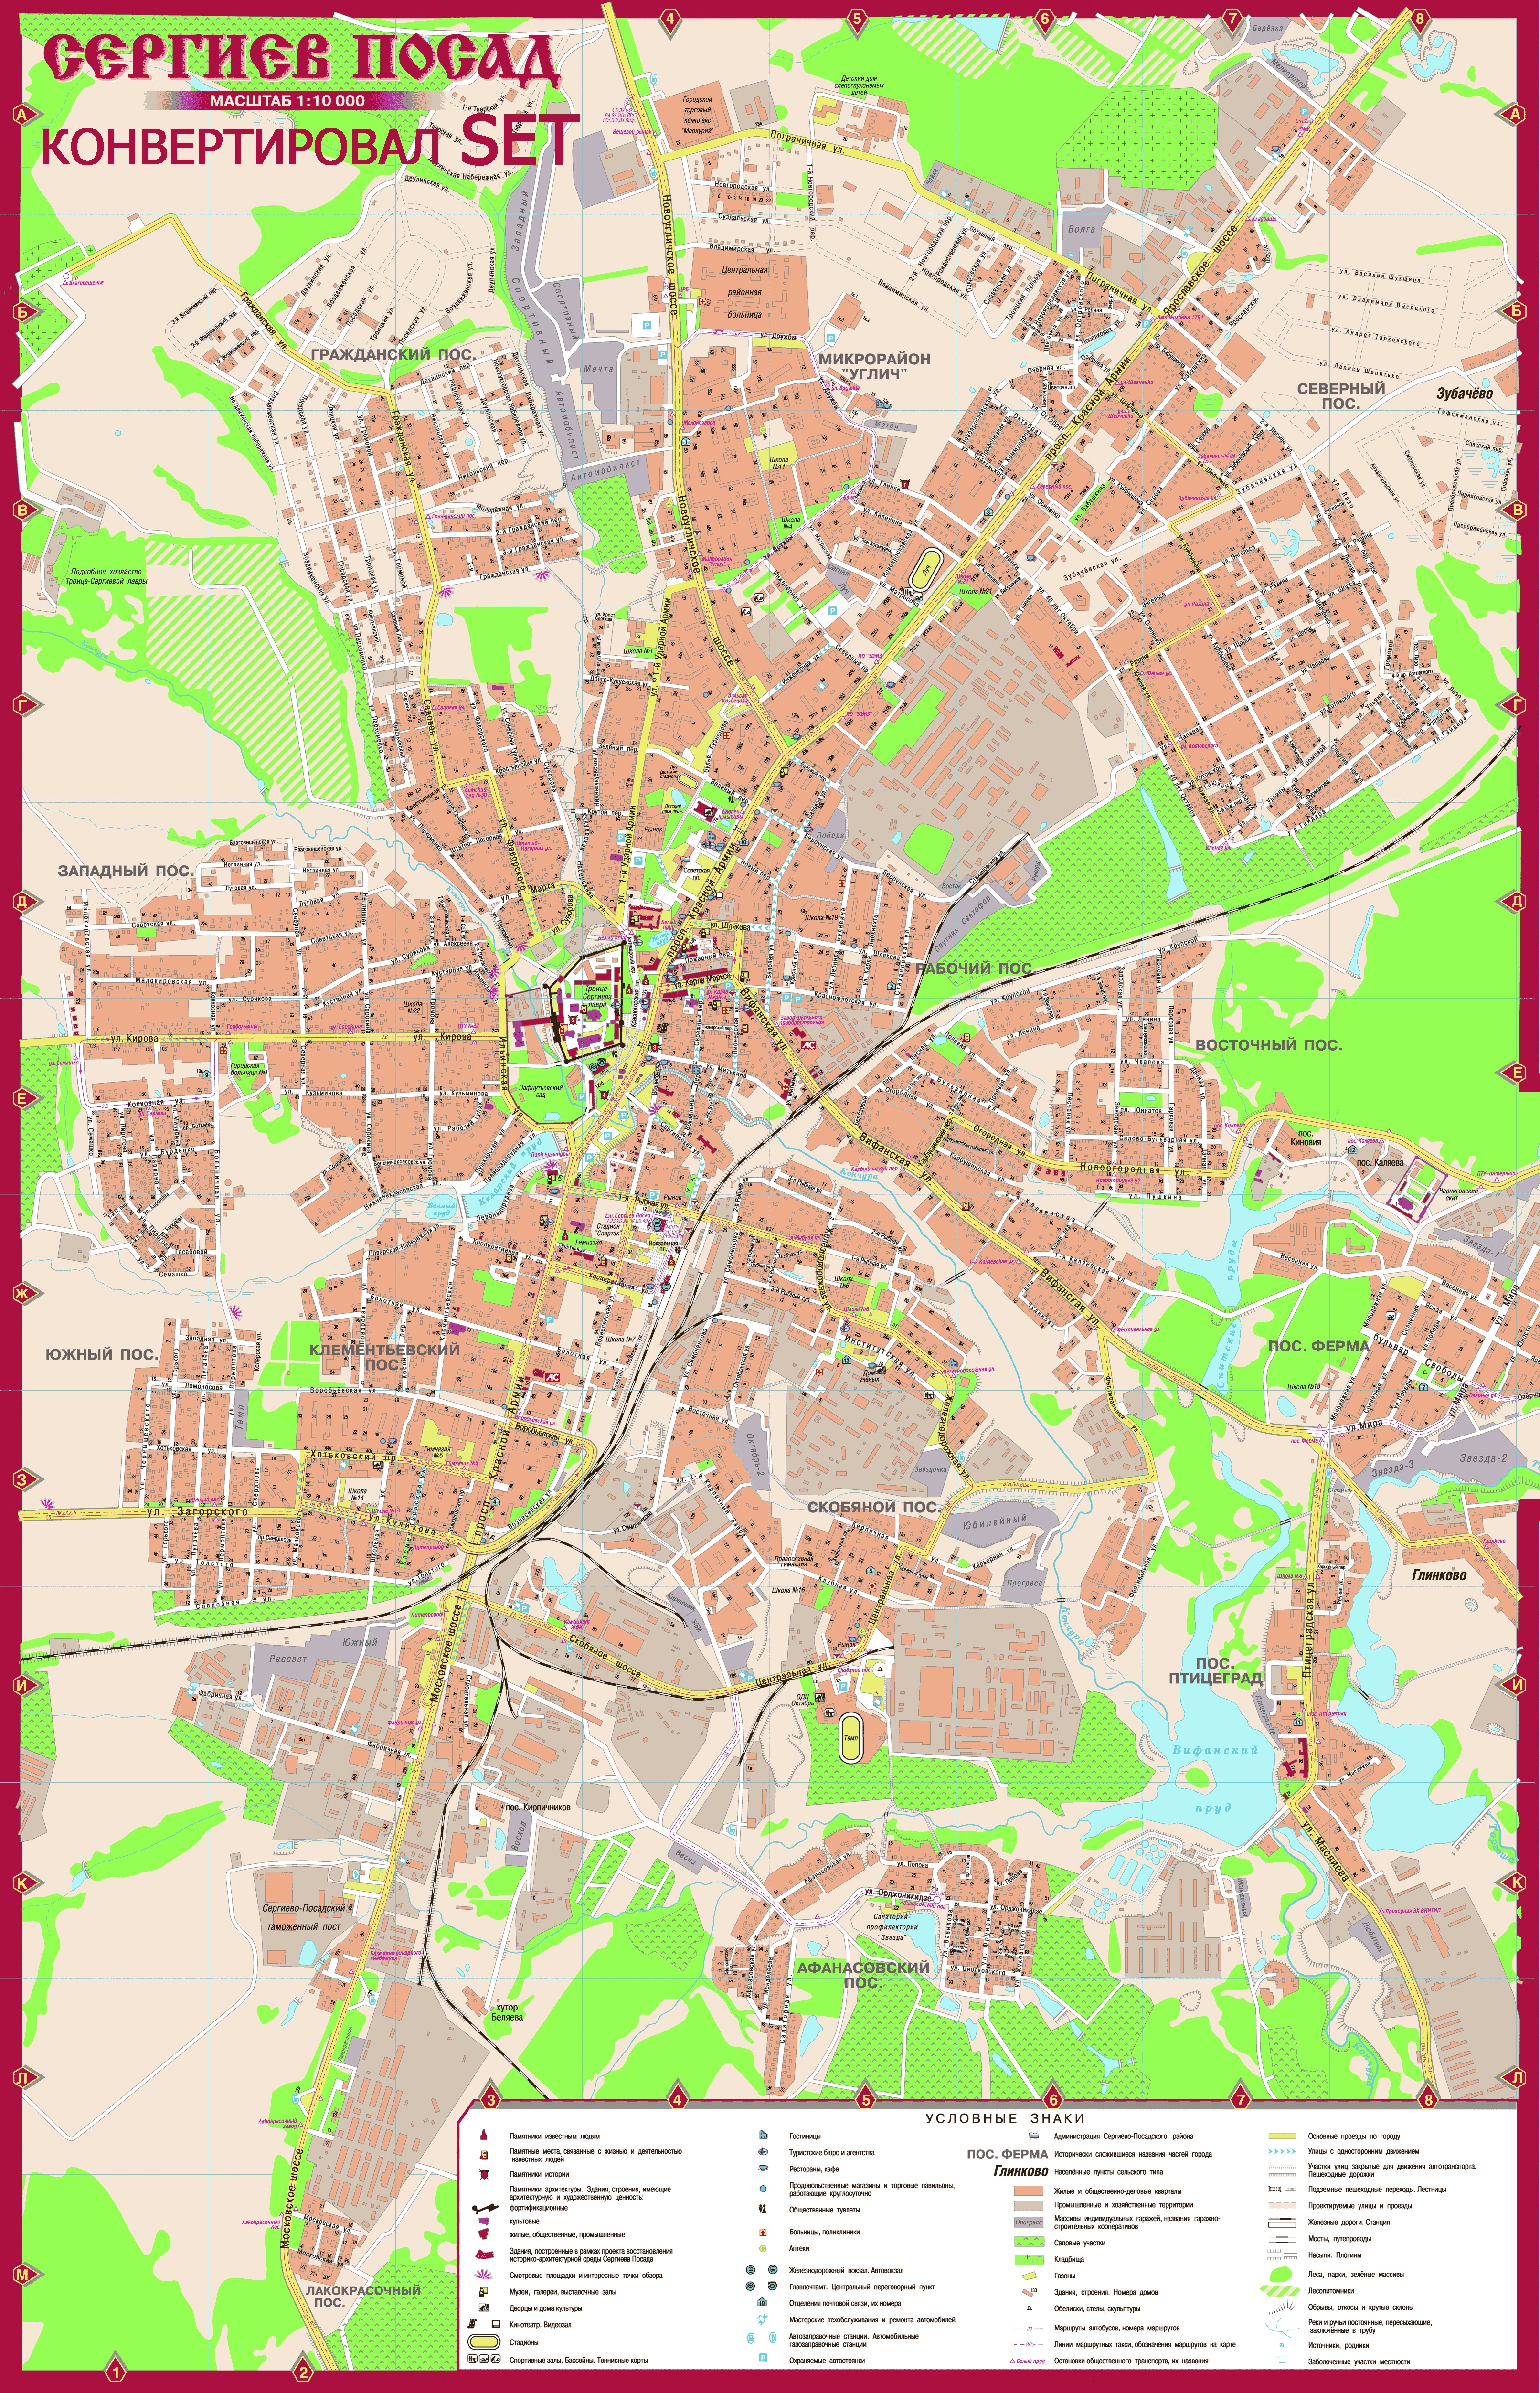 Карта Сергиева Посада (Россия) на русском языке, расположение на карте мирас городами, метро, центра, районов и округов